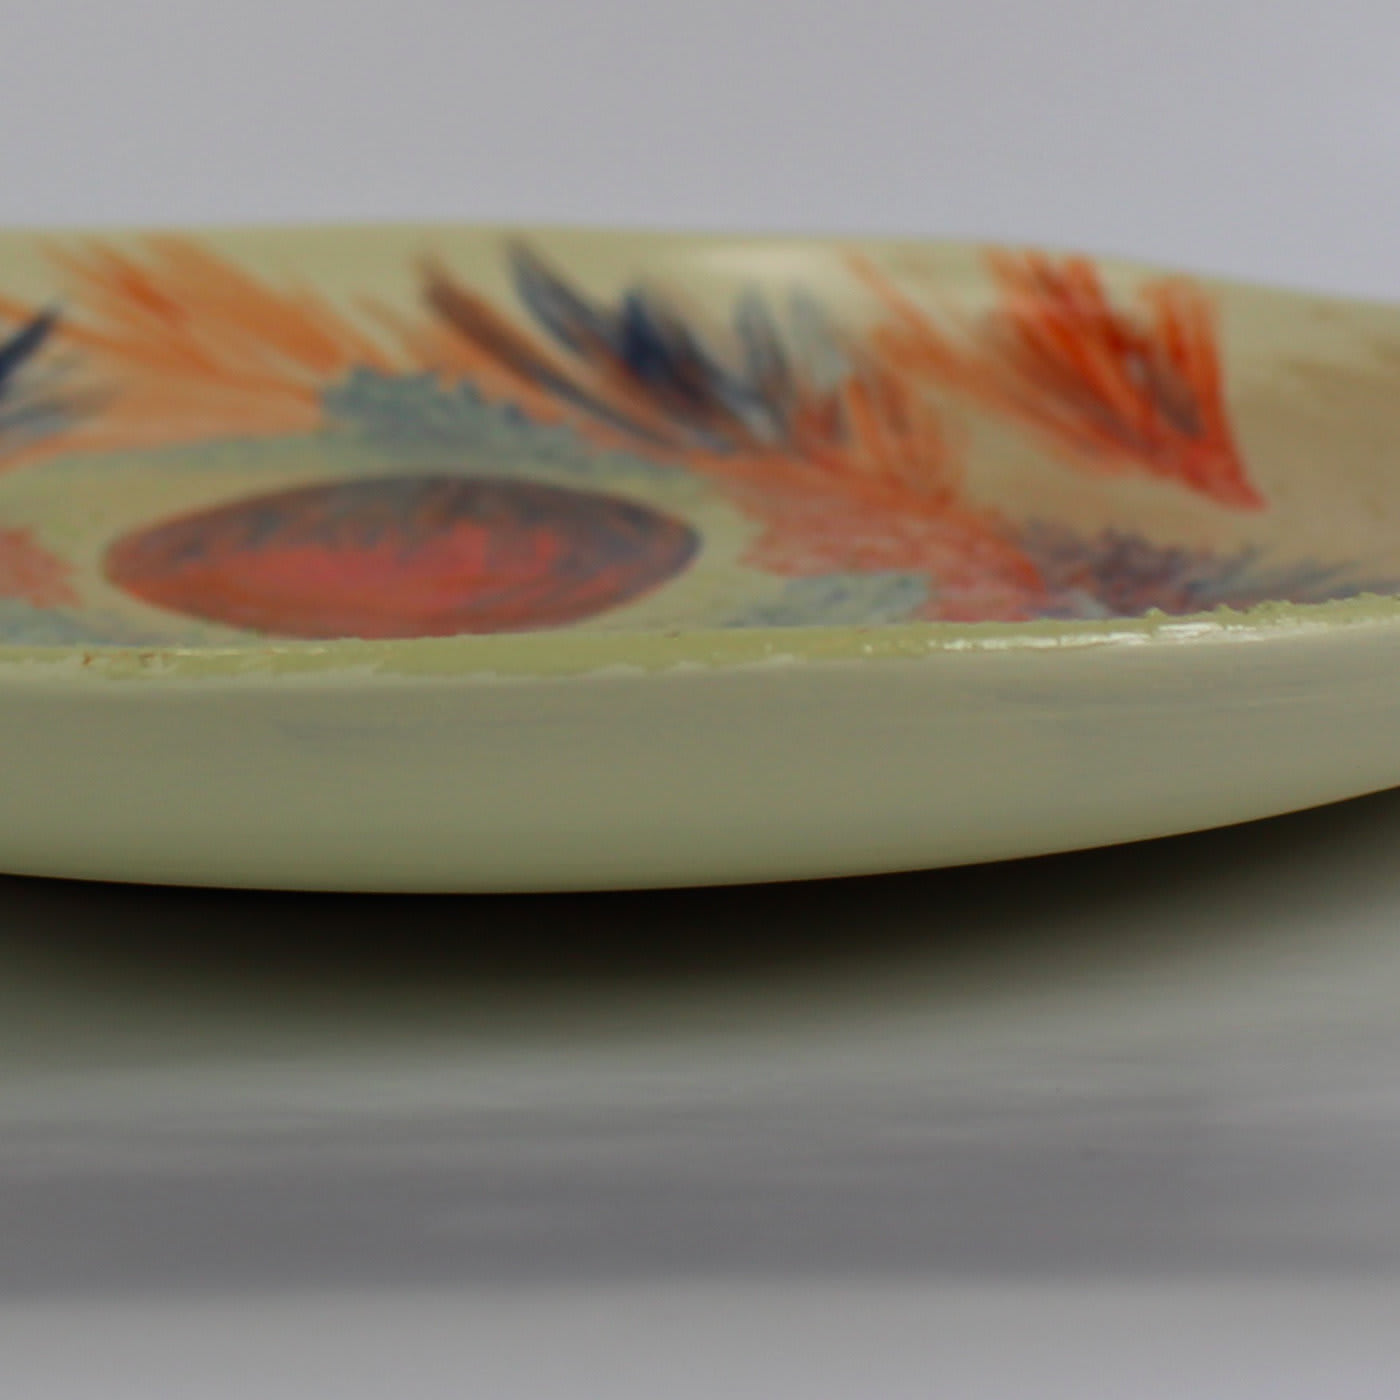 Terracotta #8 Plate by Mascia Meccani - Meccani Design